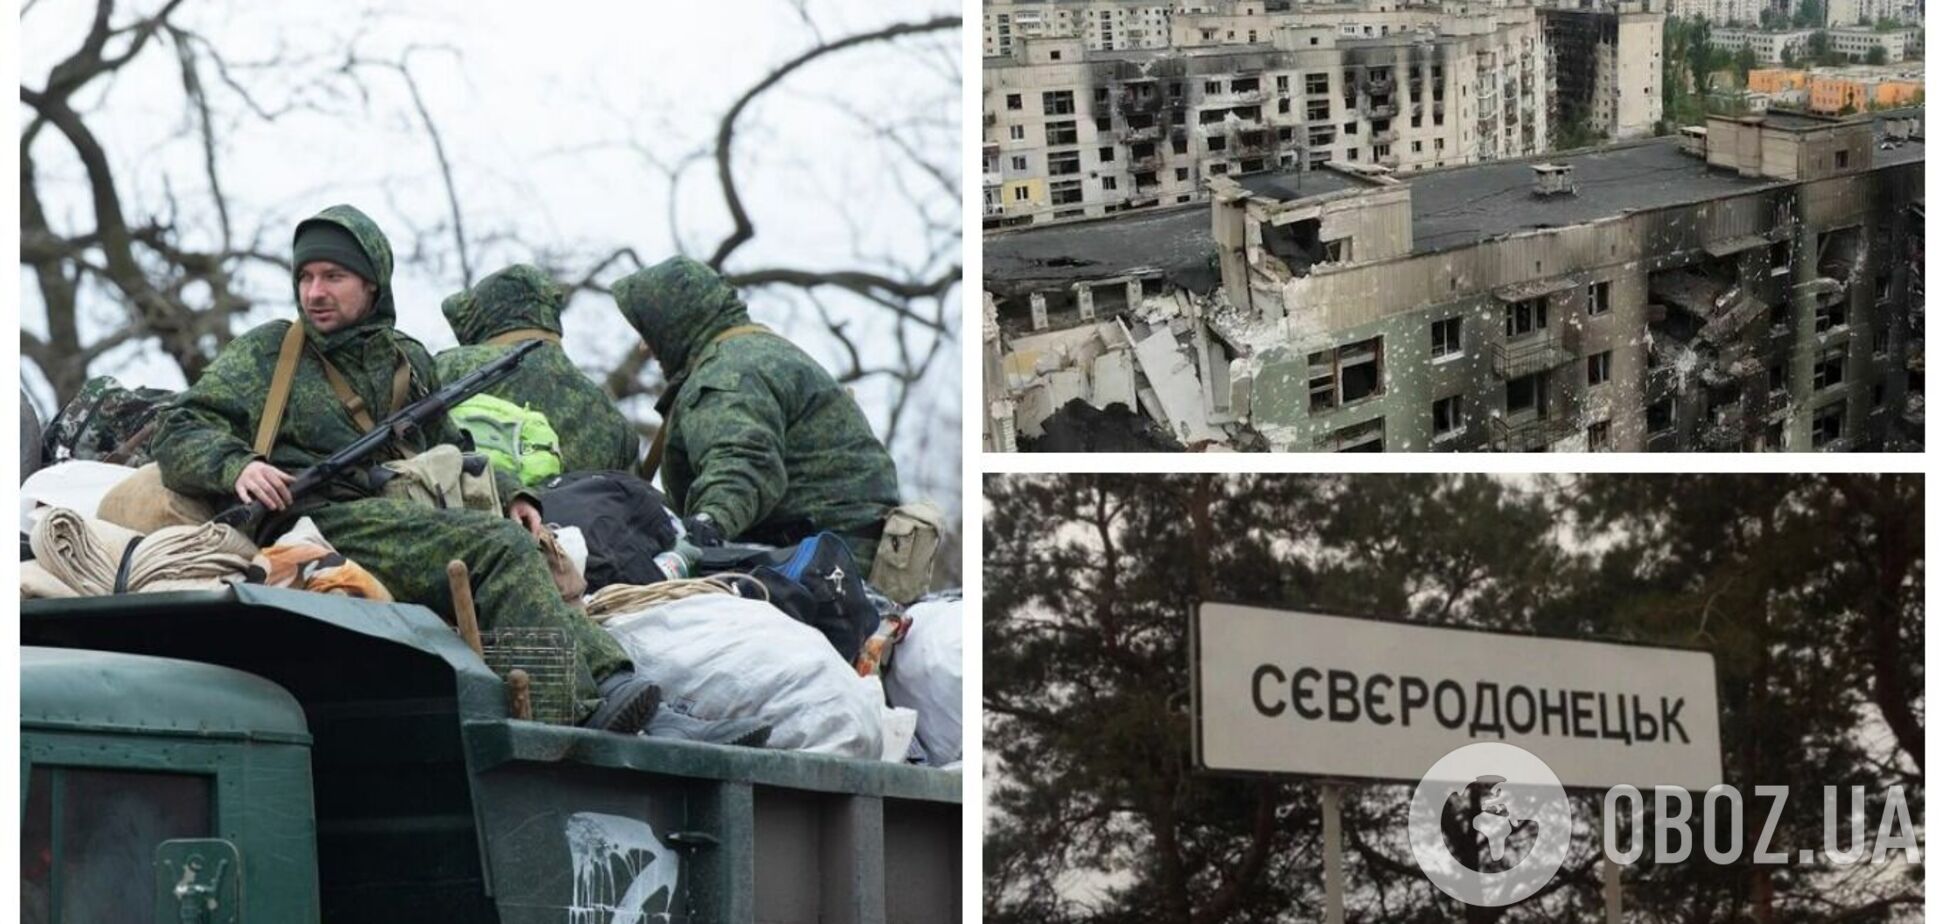 Все розграбовано: у мережі показали, що зробили окупанти з універмагом у Сєвєродонецьку. Відео